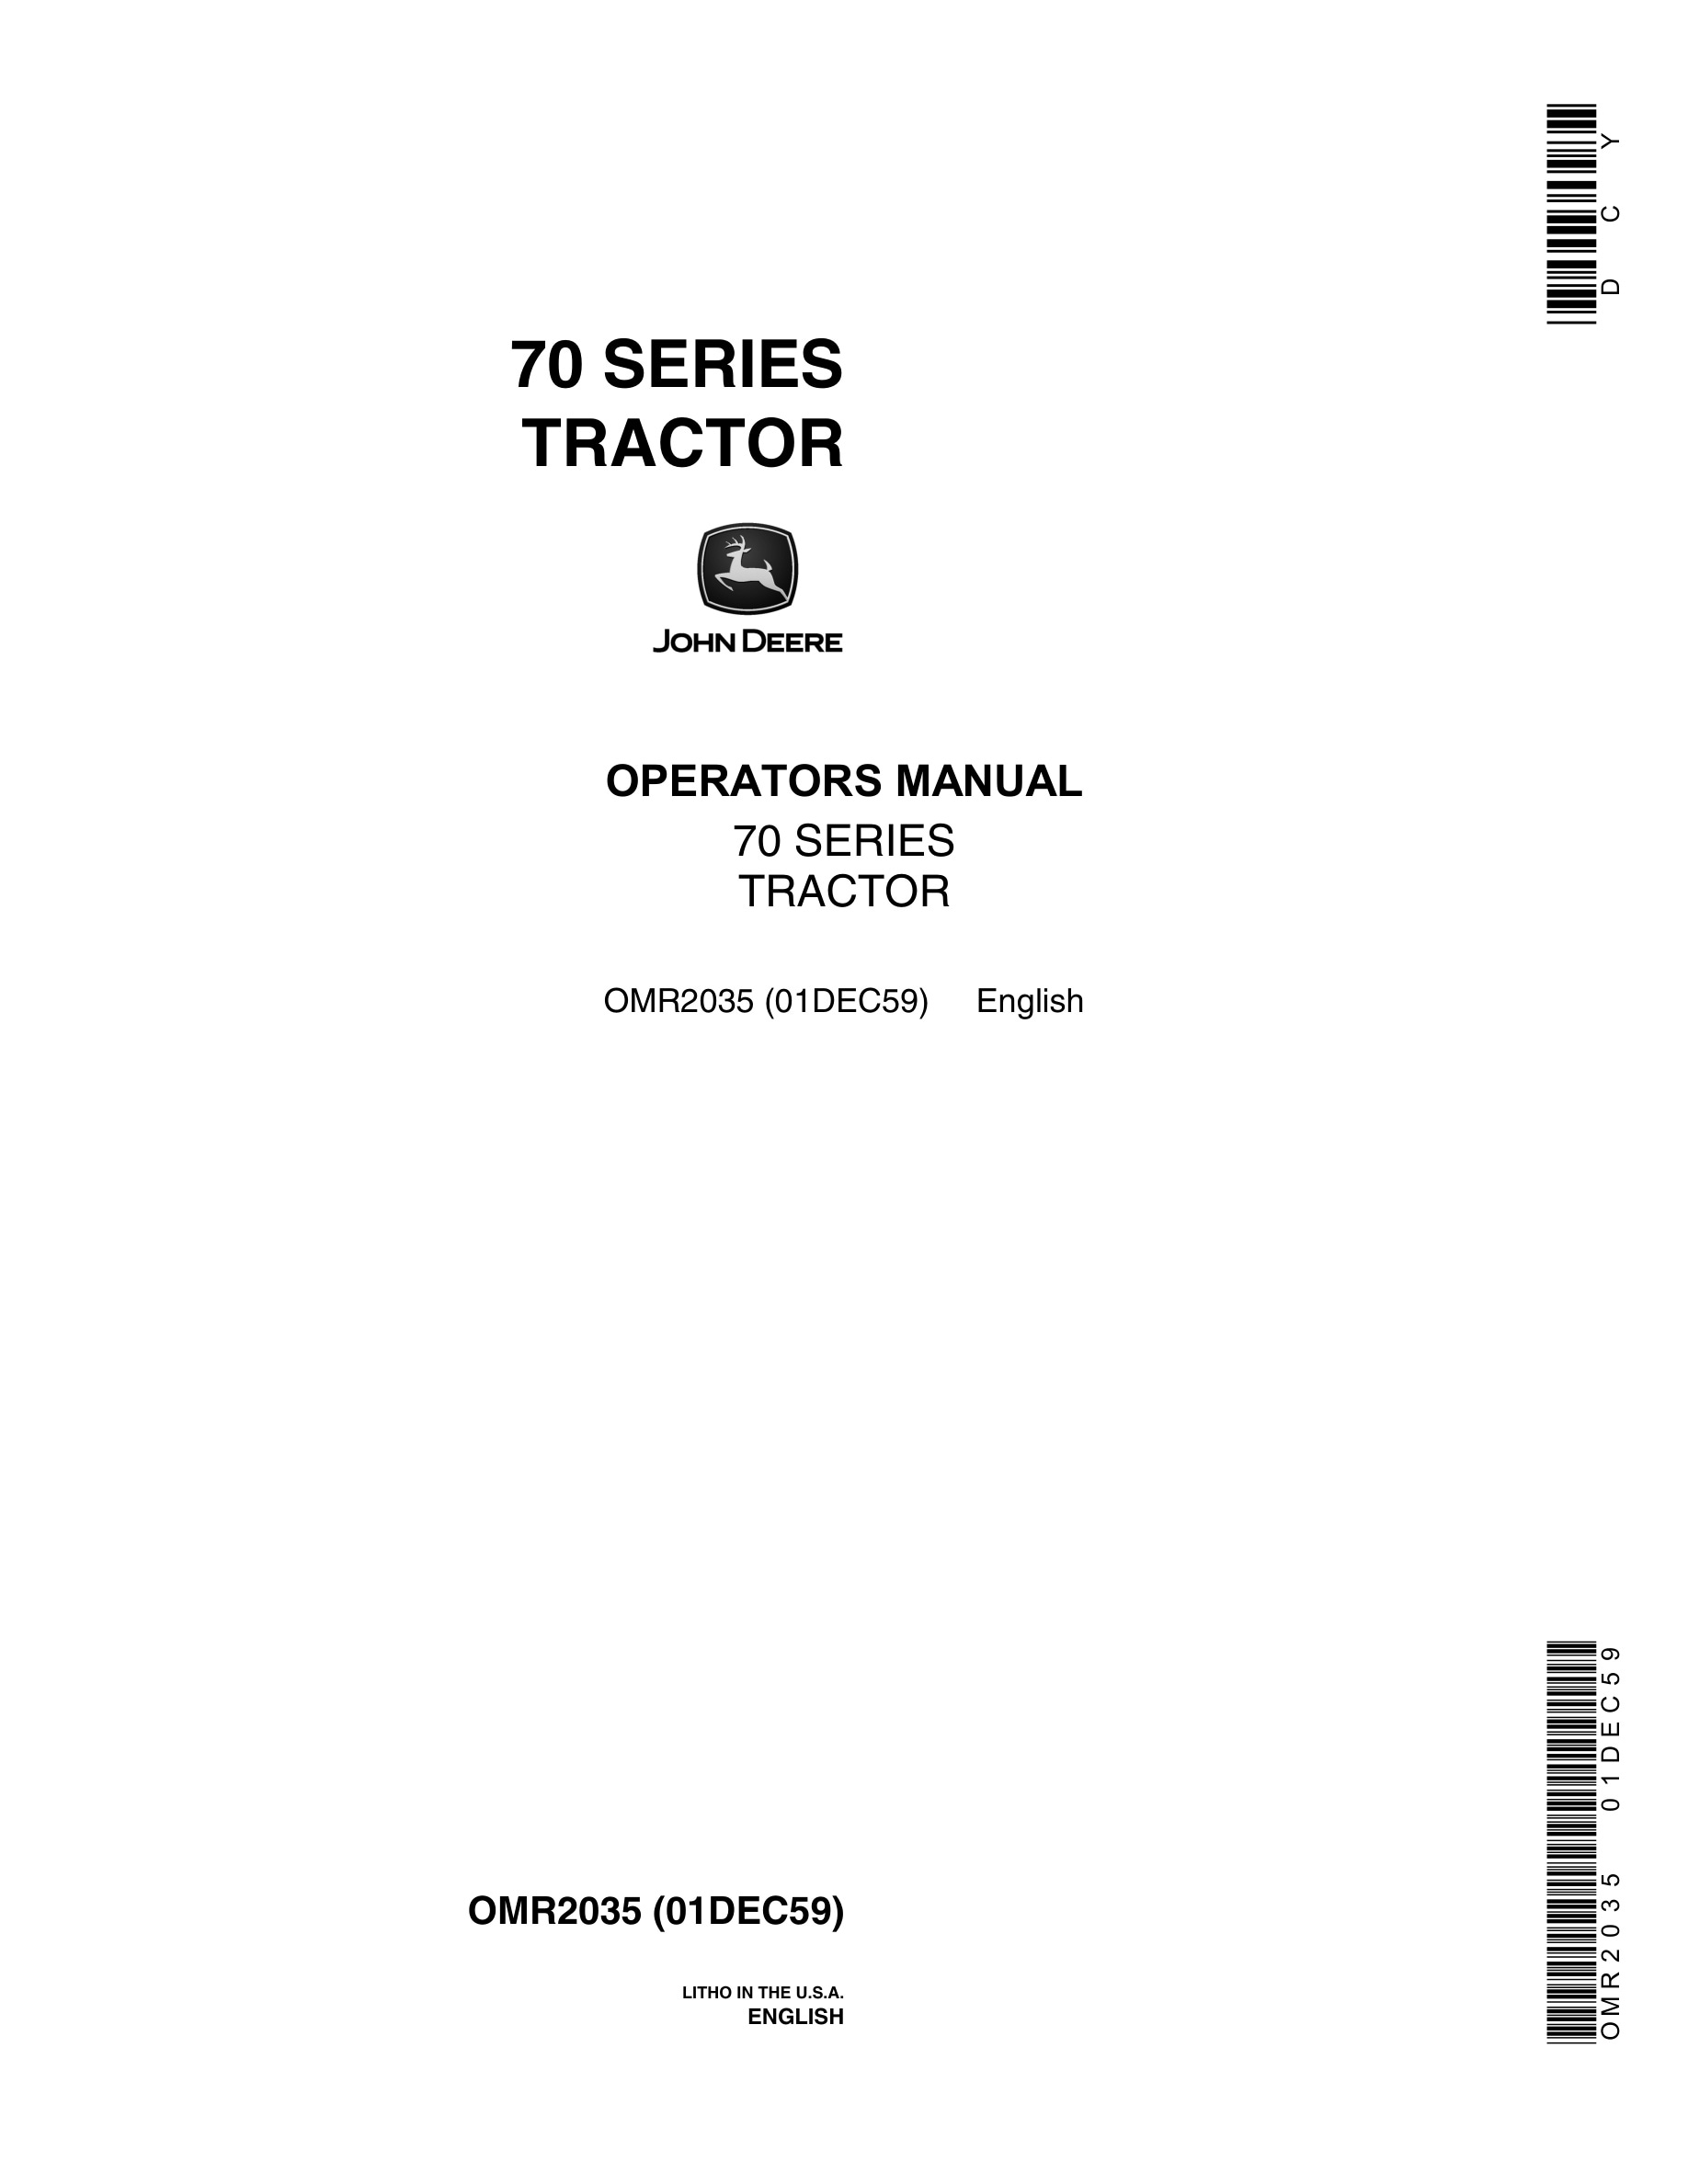 John Deere Model 70 Tractor Operator Manual OMR2035-1